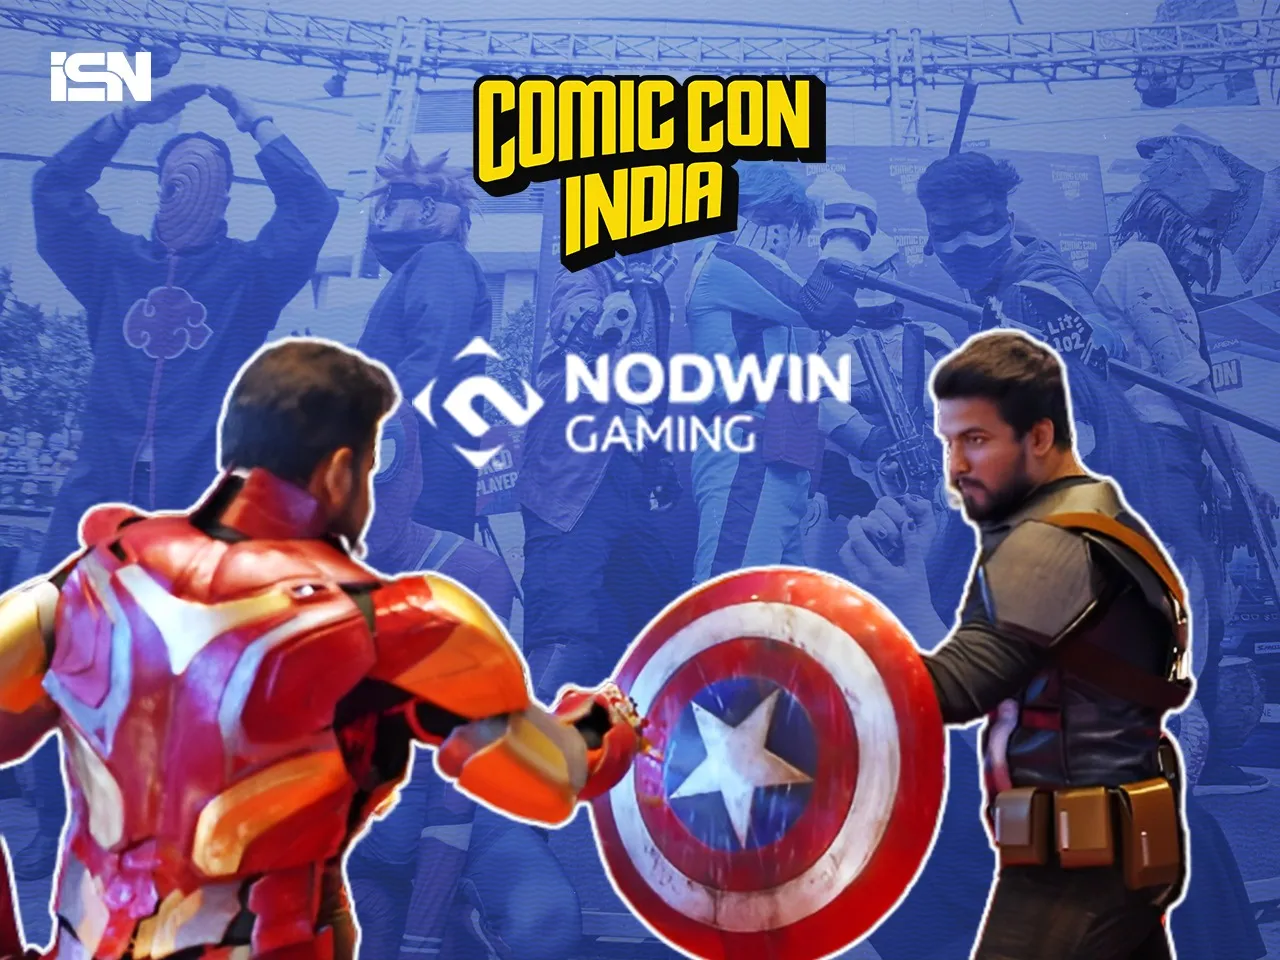 nodwin acquires comic con india